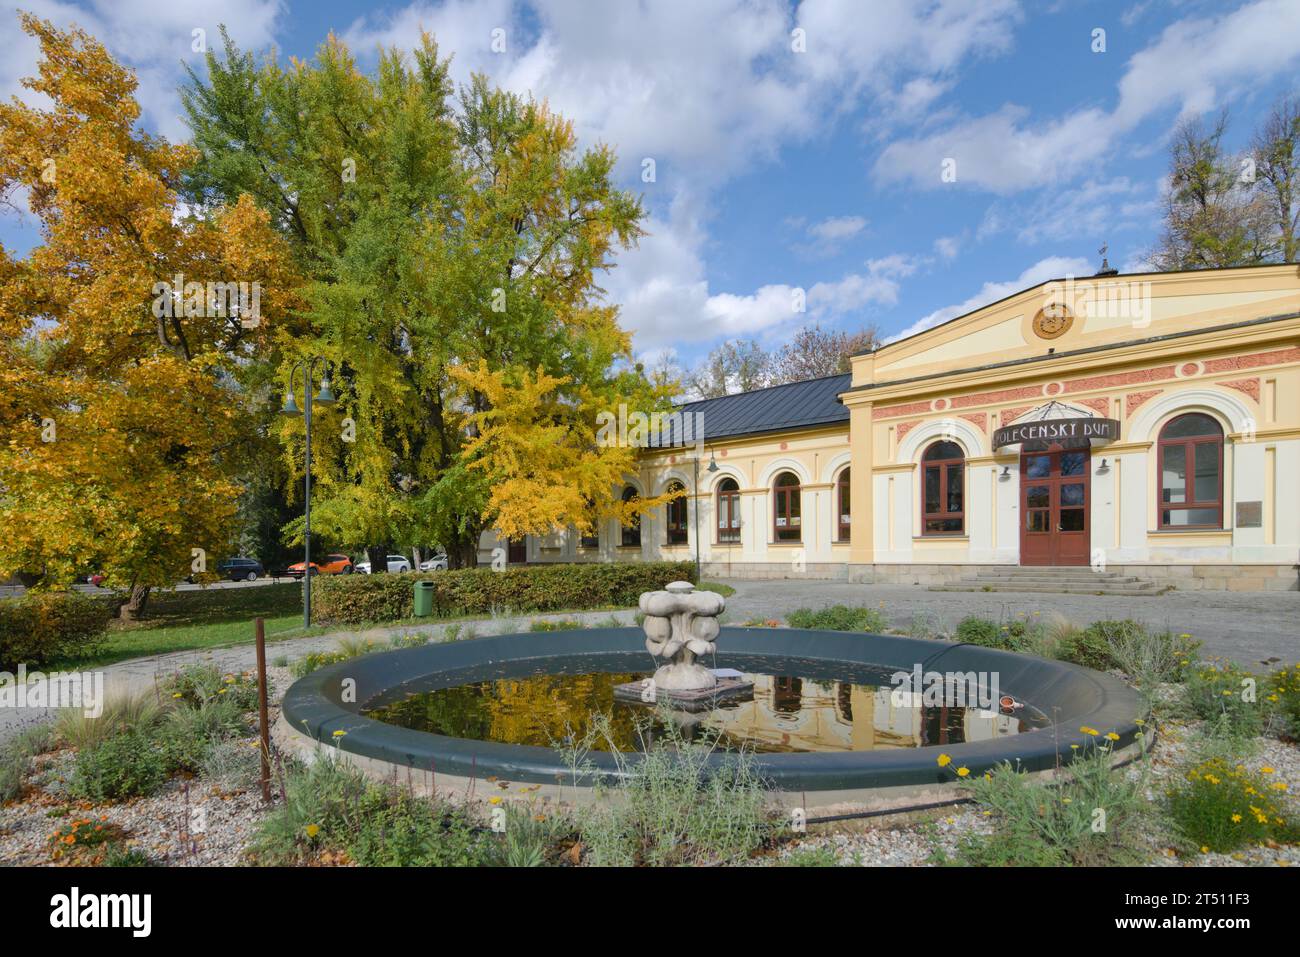 Gemeindezentrum in der Nähe des Parks in Roznov Pod Radhostem in der Tschechischen republik. Kombination aus moderner und klassischer Architektur und Herbstlaub. Stockfoto